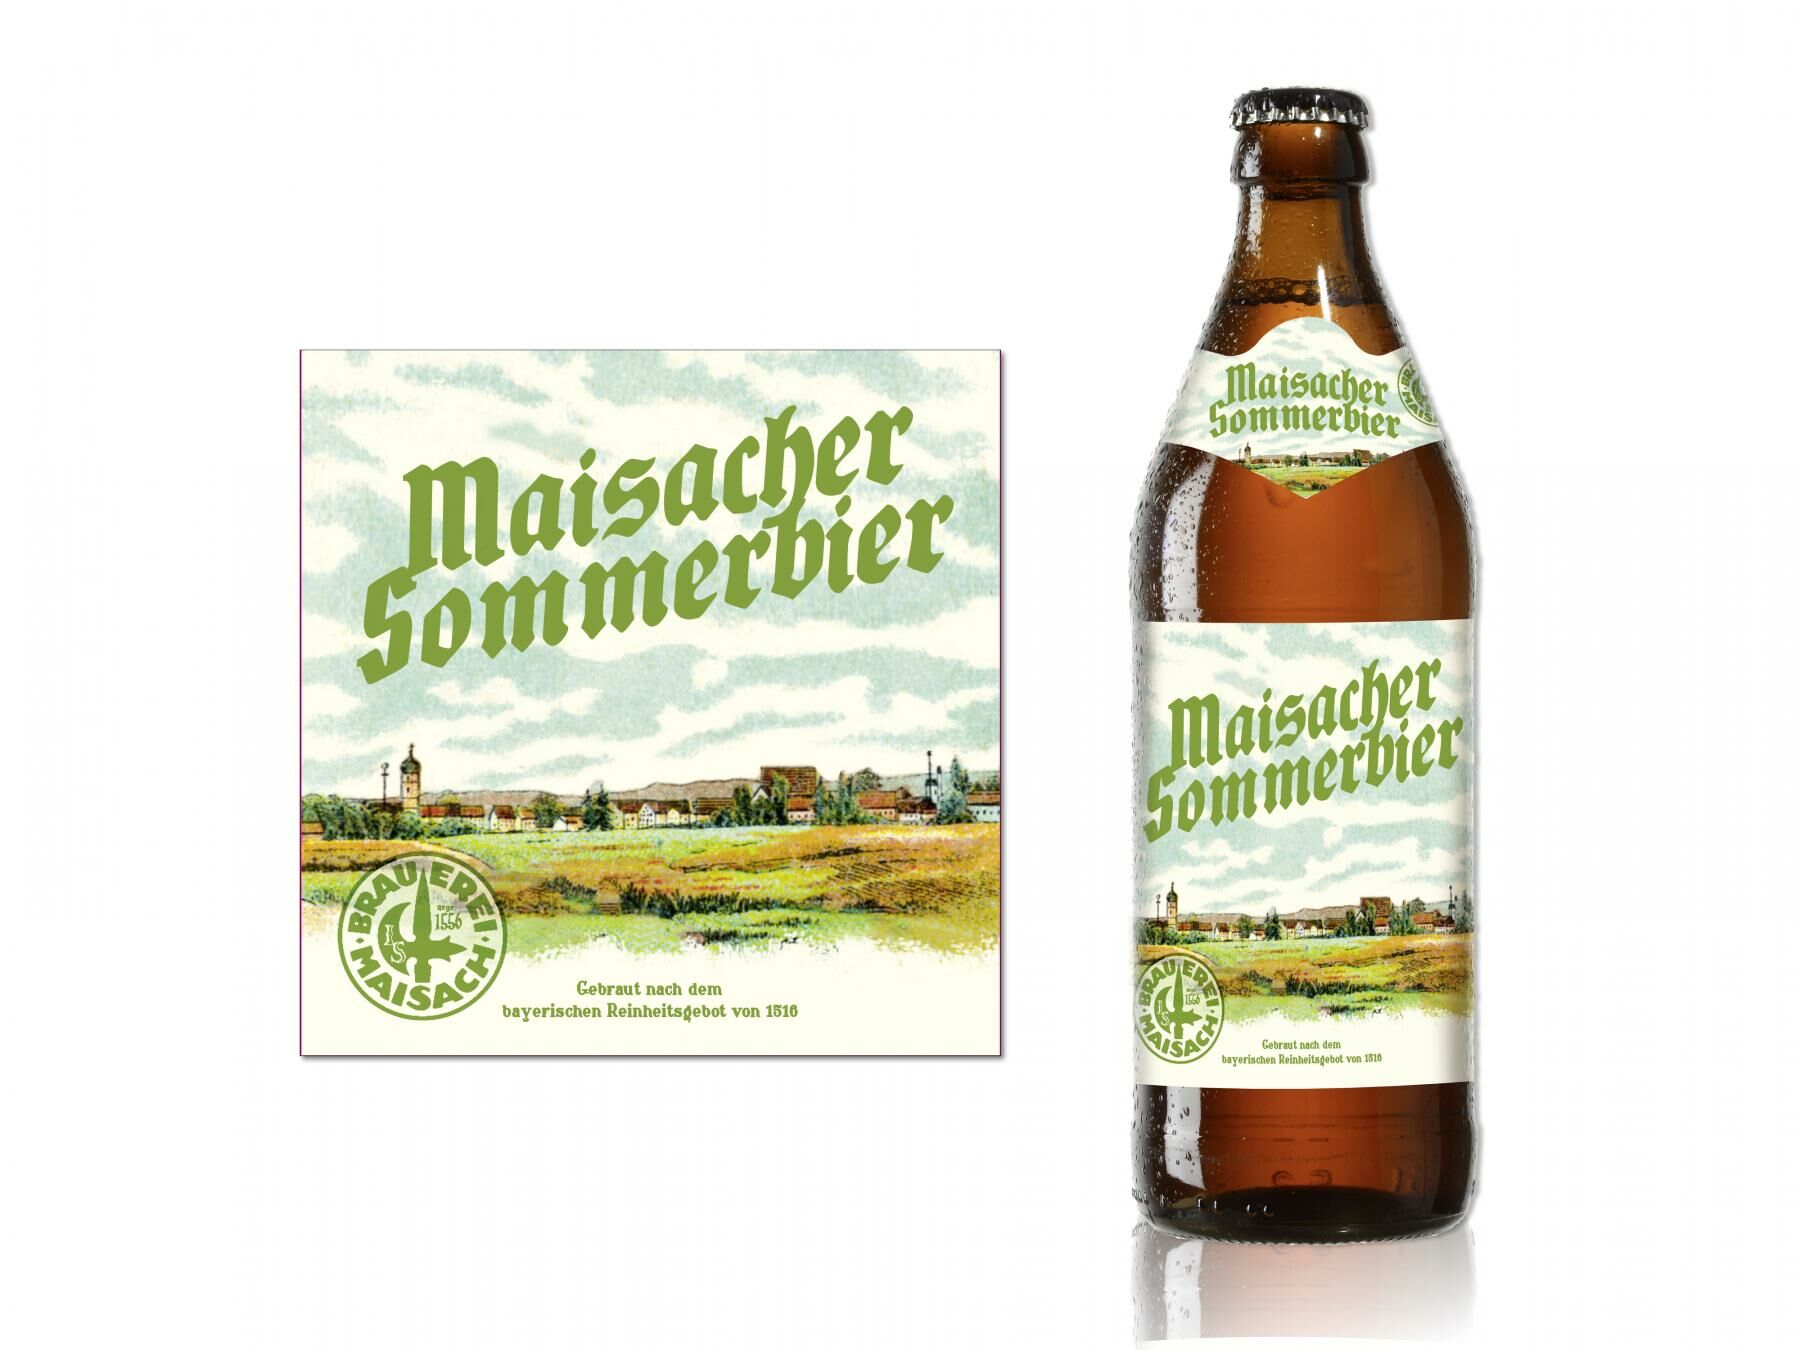 Brauerei Maisach, Sommerbier, Etiketten, Grafikdesign